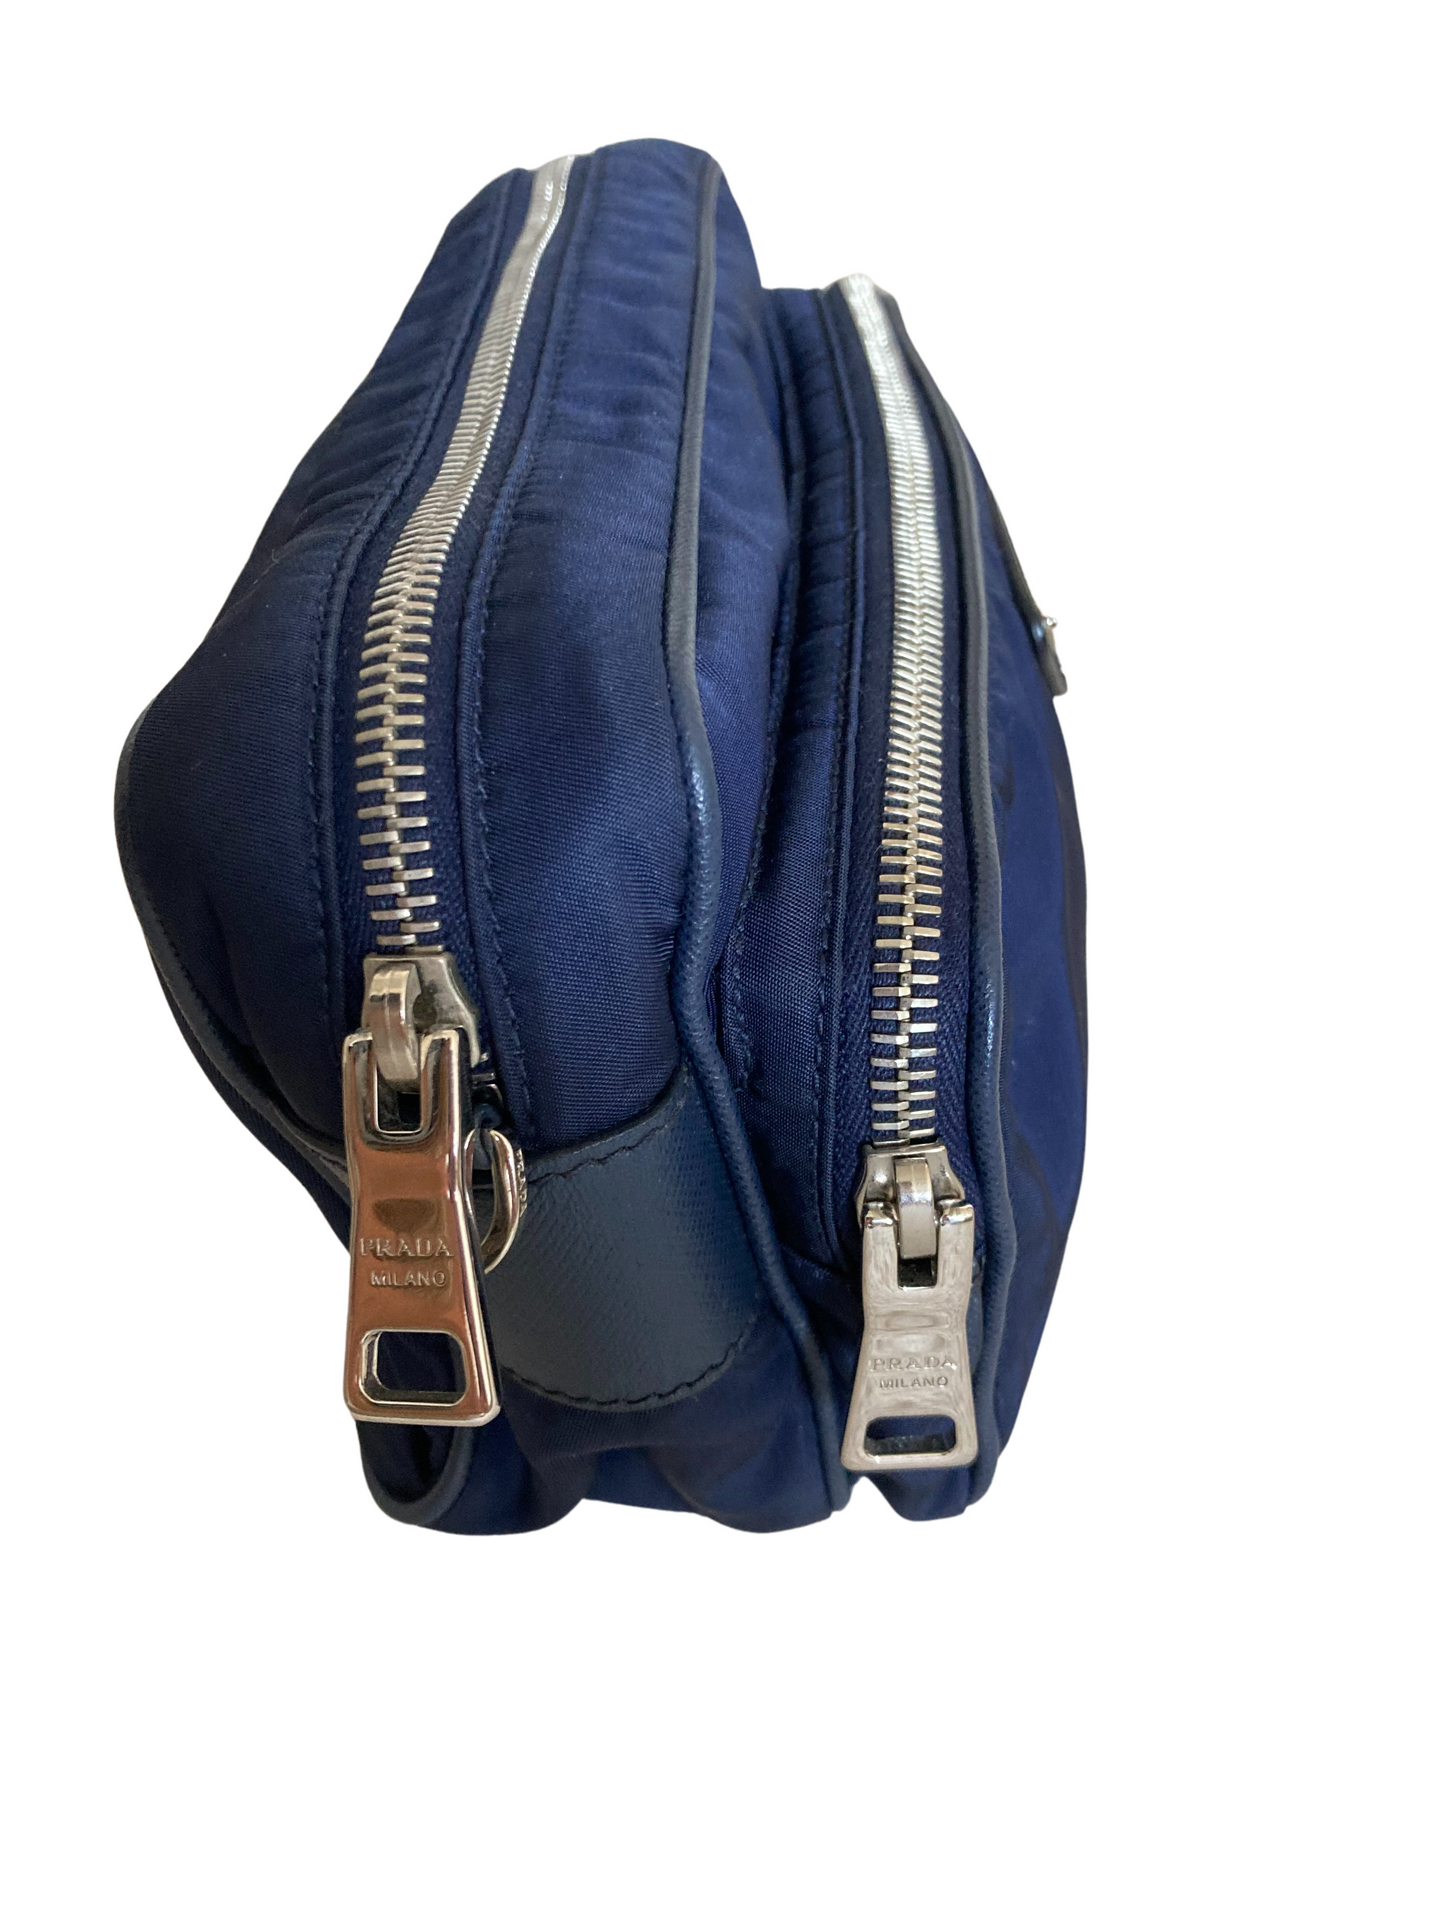 Prada Navy Nylon Leather Shoulder Bag